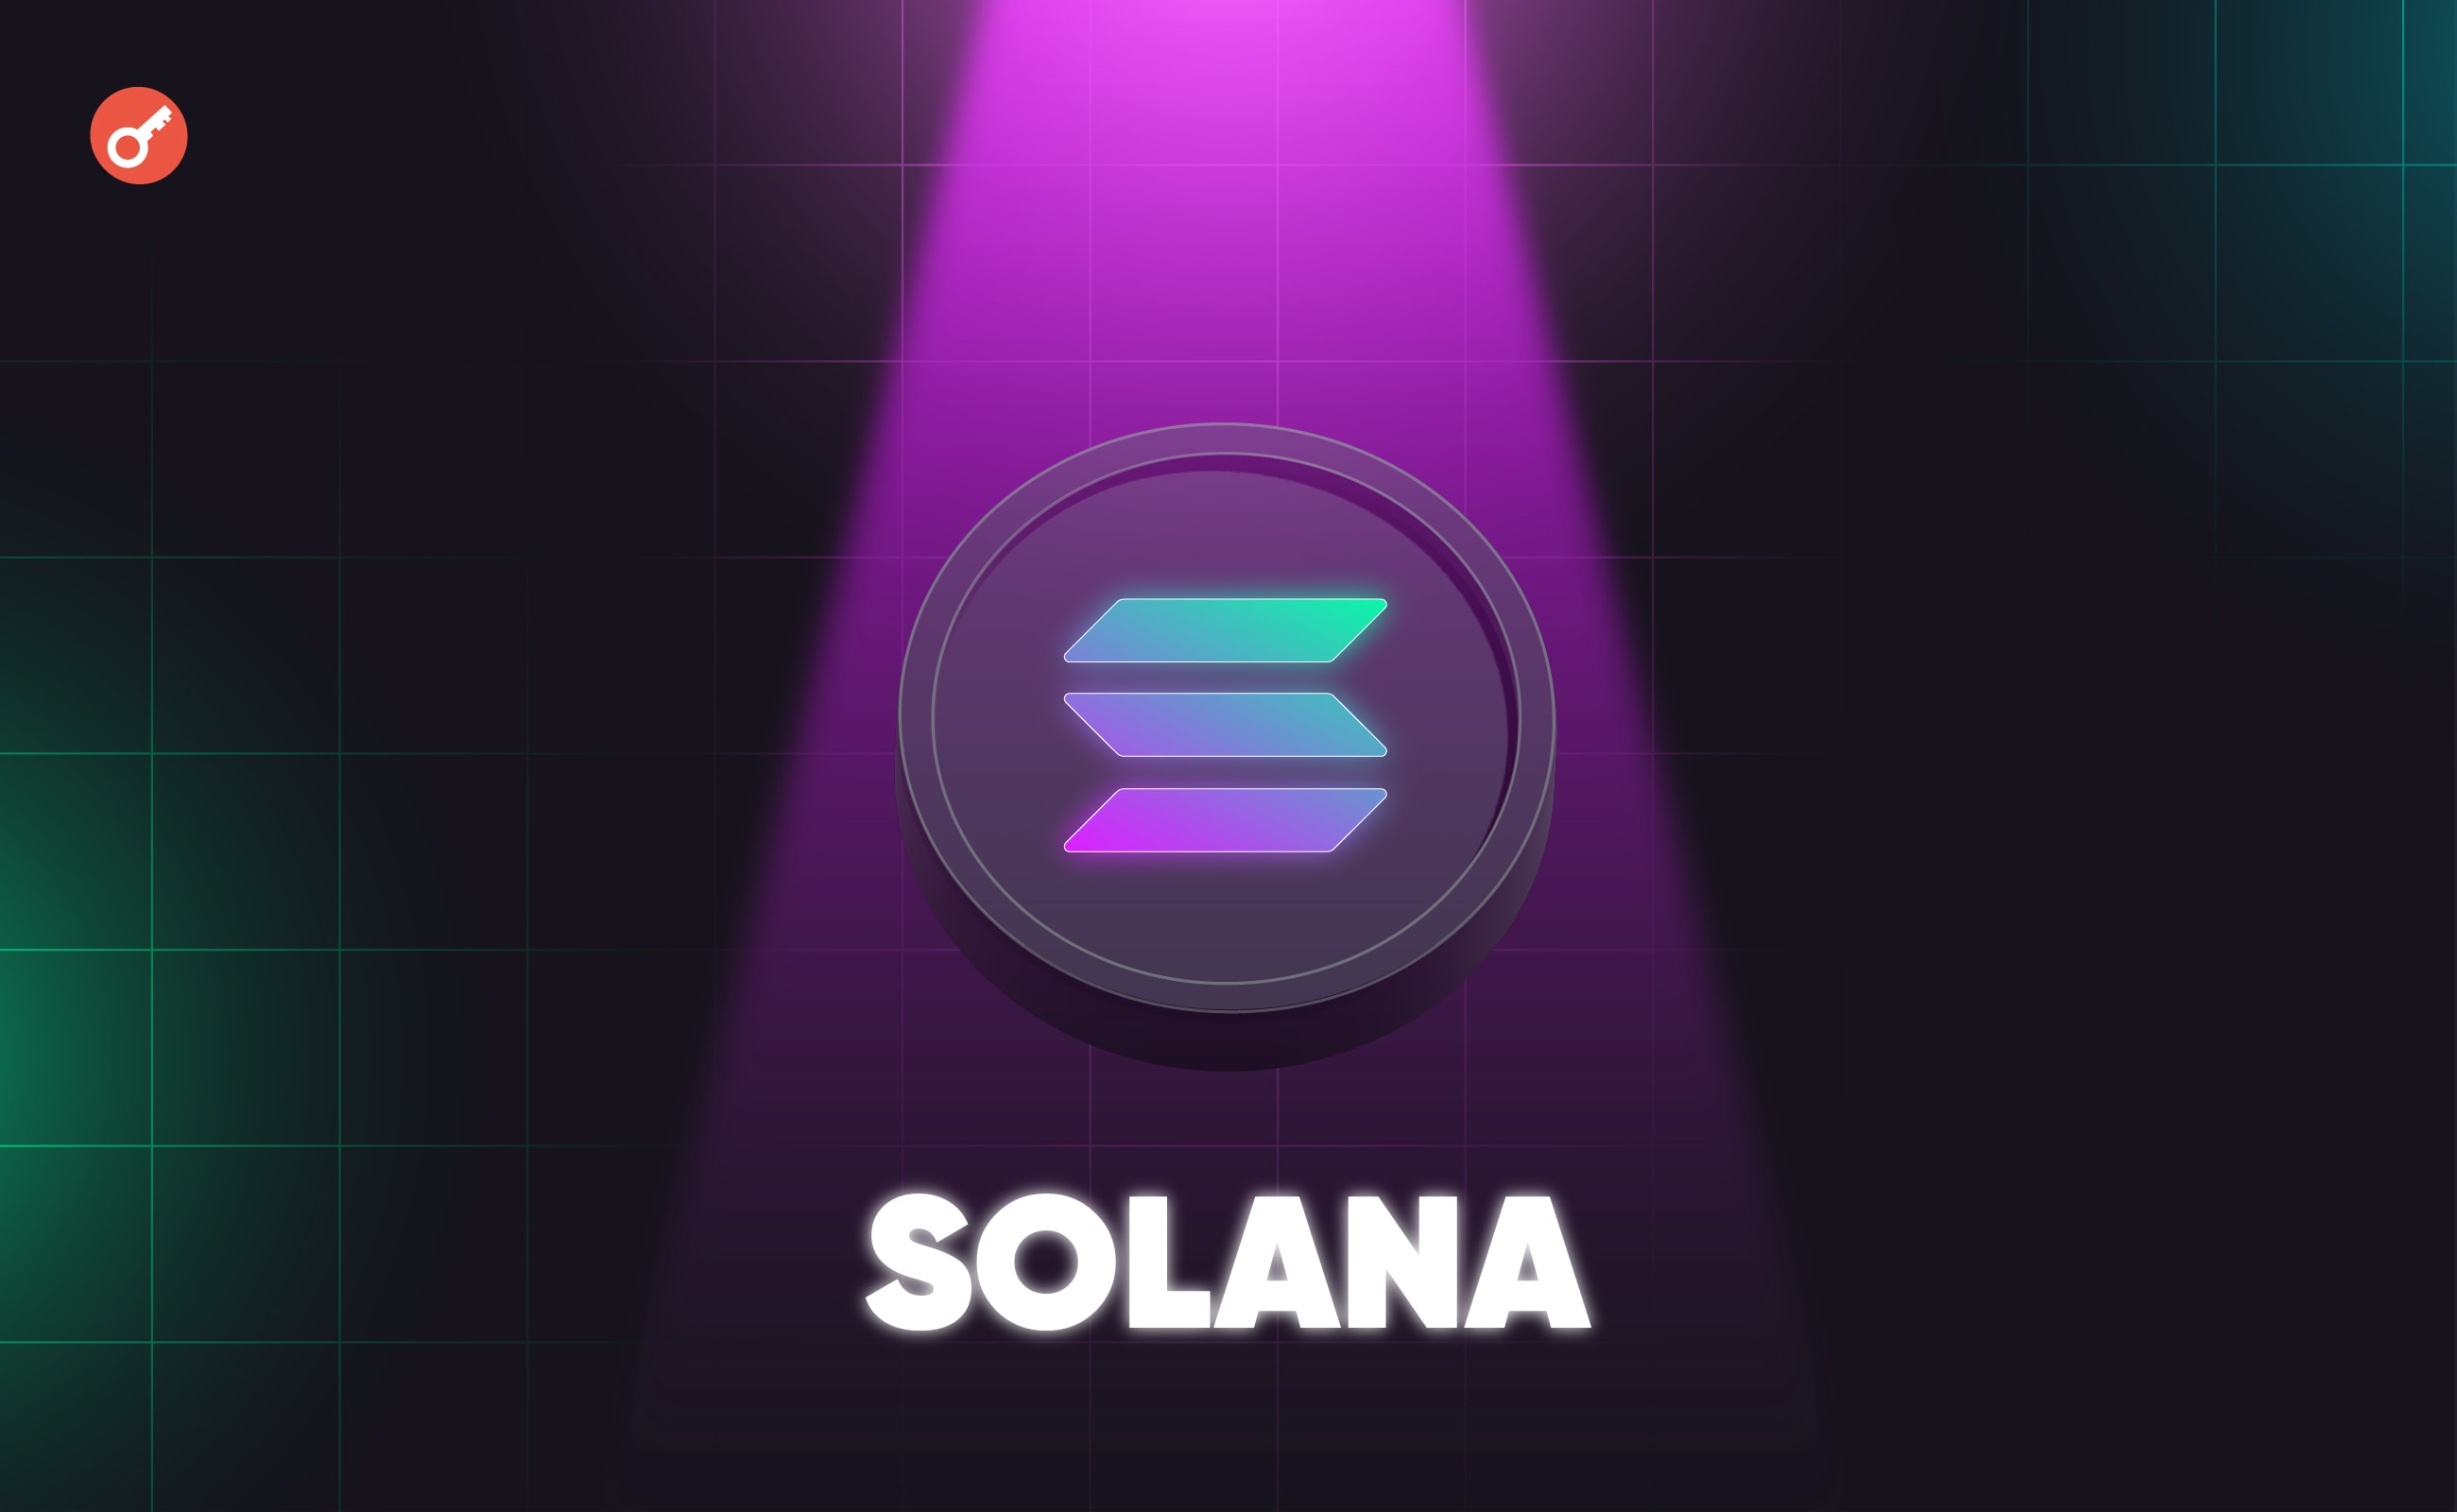 Команда Solana выпустила обновление для борьбы с перегрузкой сети. Заглавный коллаж новости.